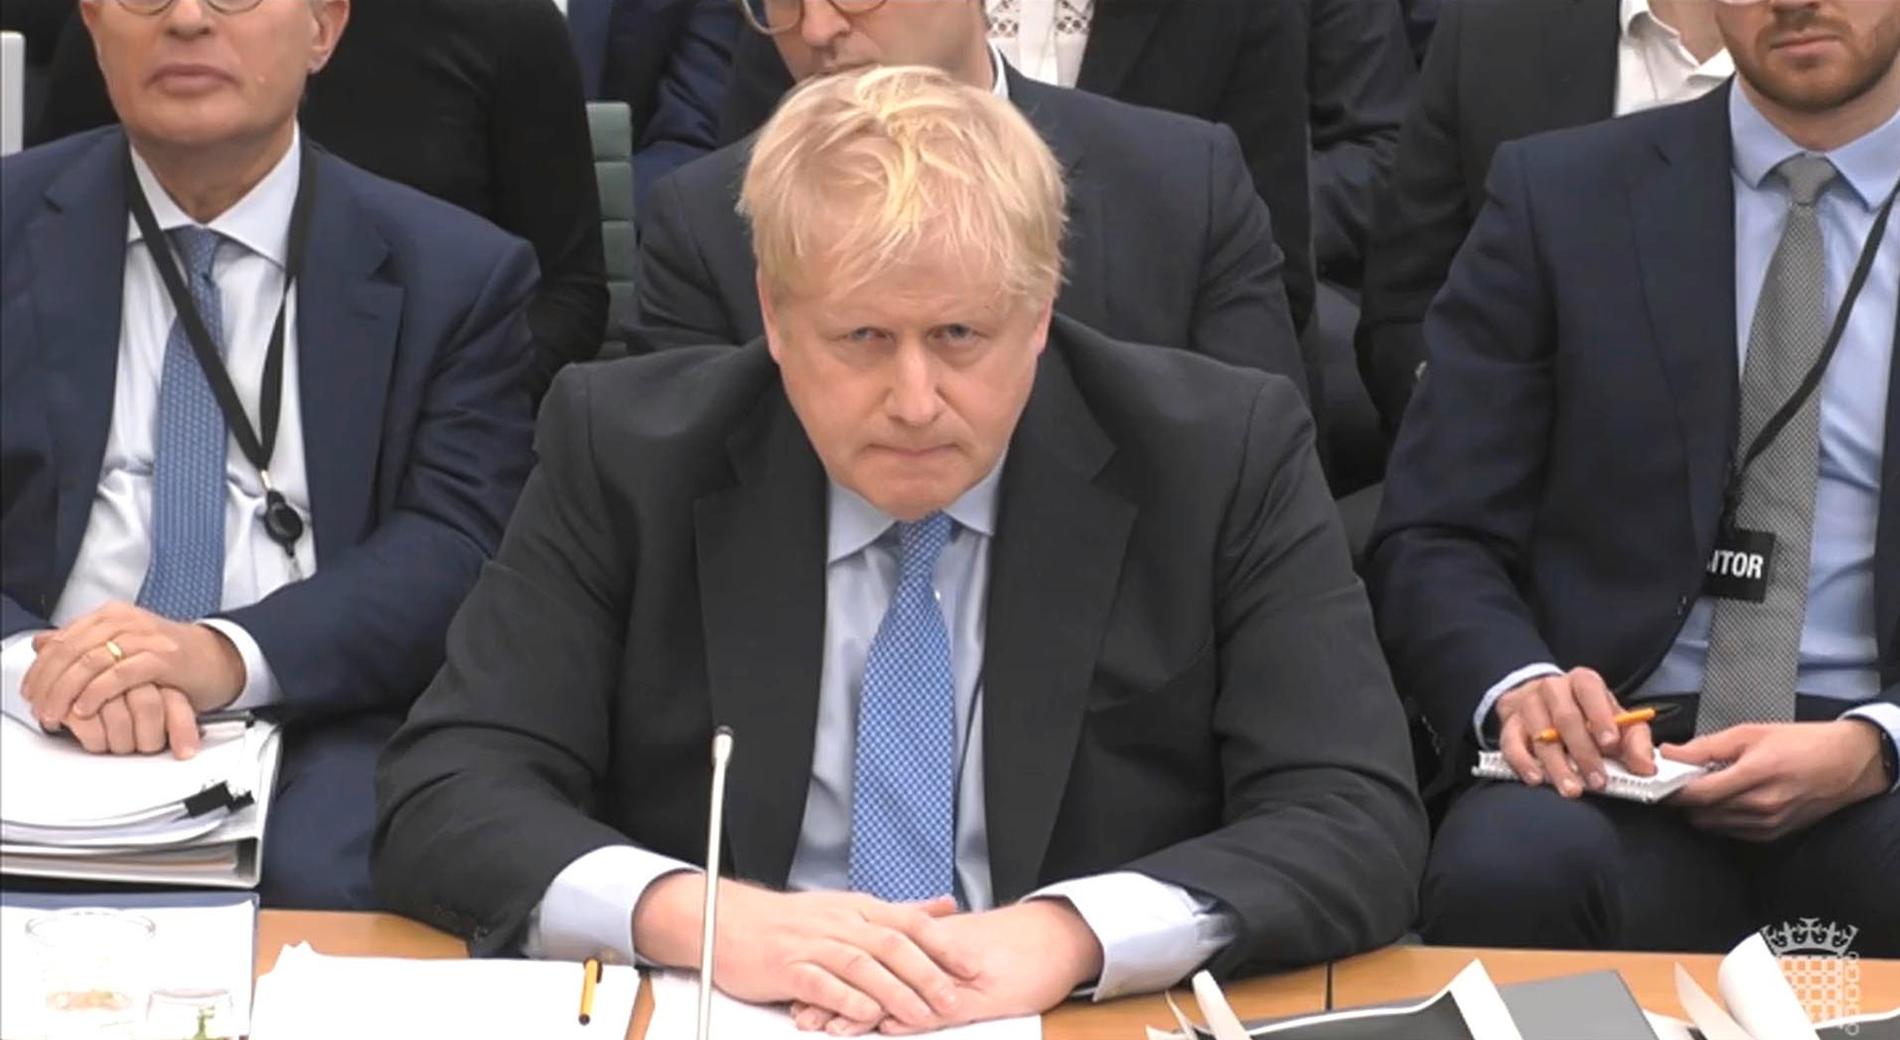 Boris Johnson vittnar inför ett utskott i parlamentets underhus.